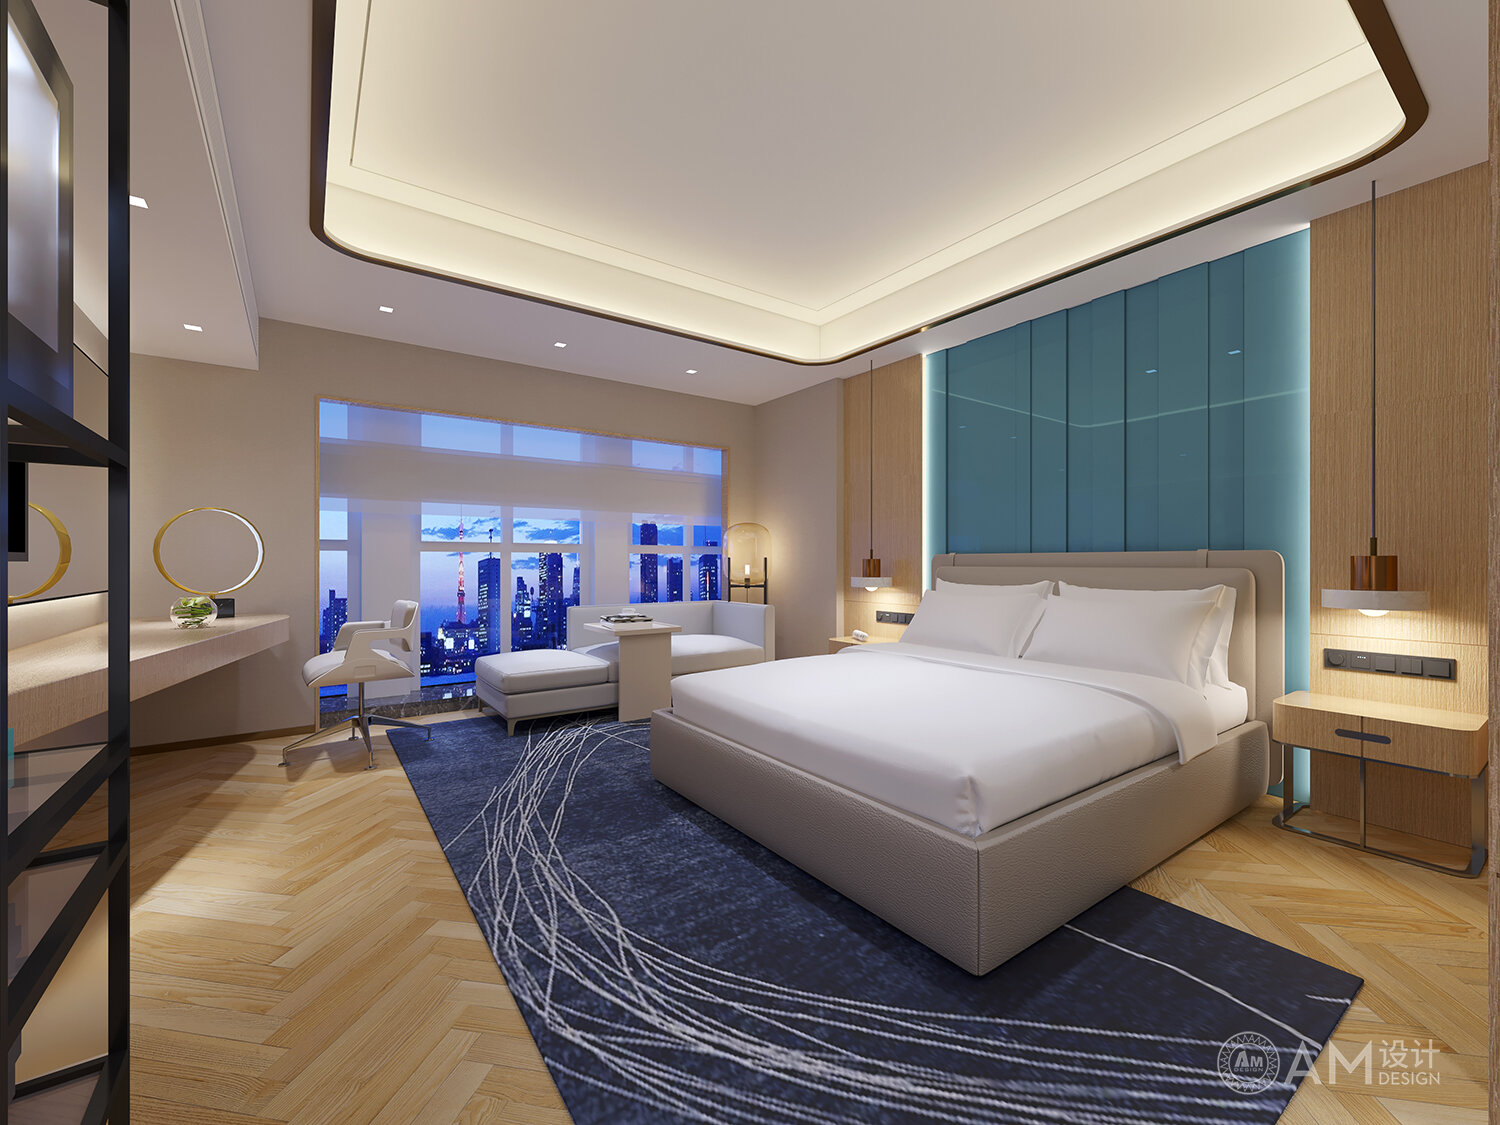 AM|Yuelai Hotel Room Design